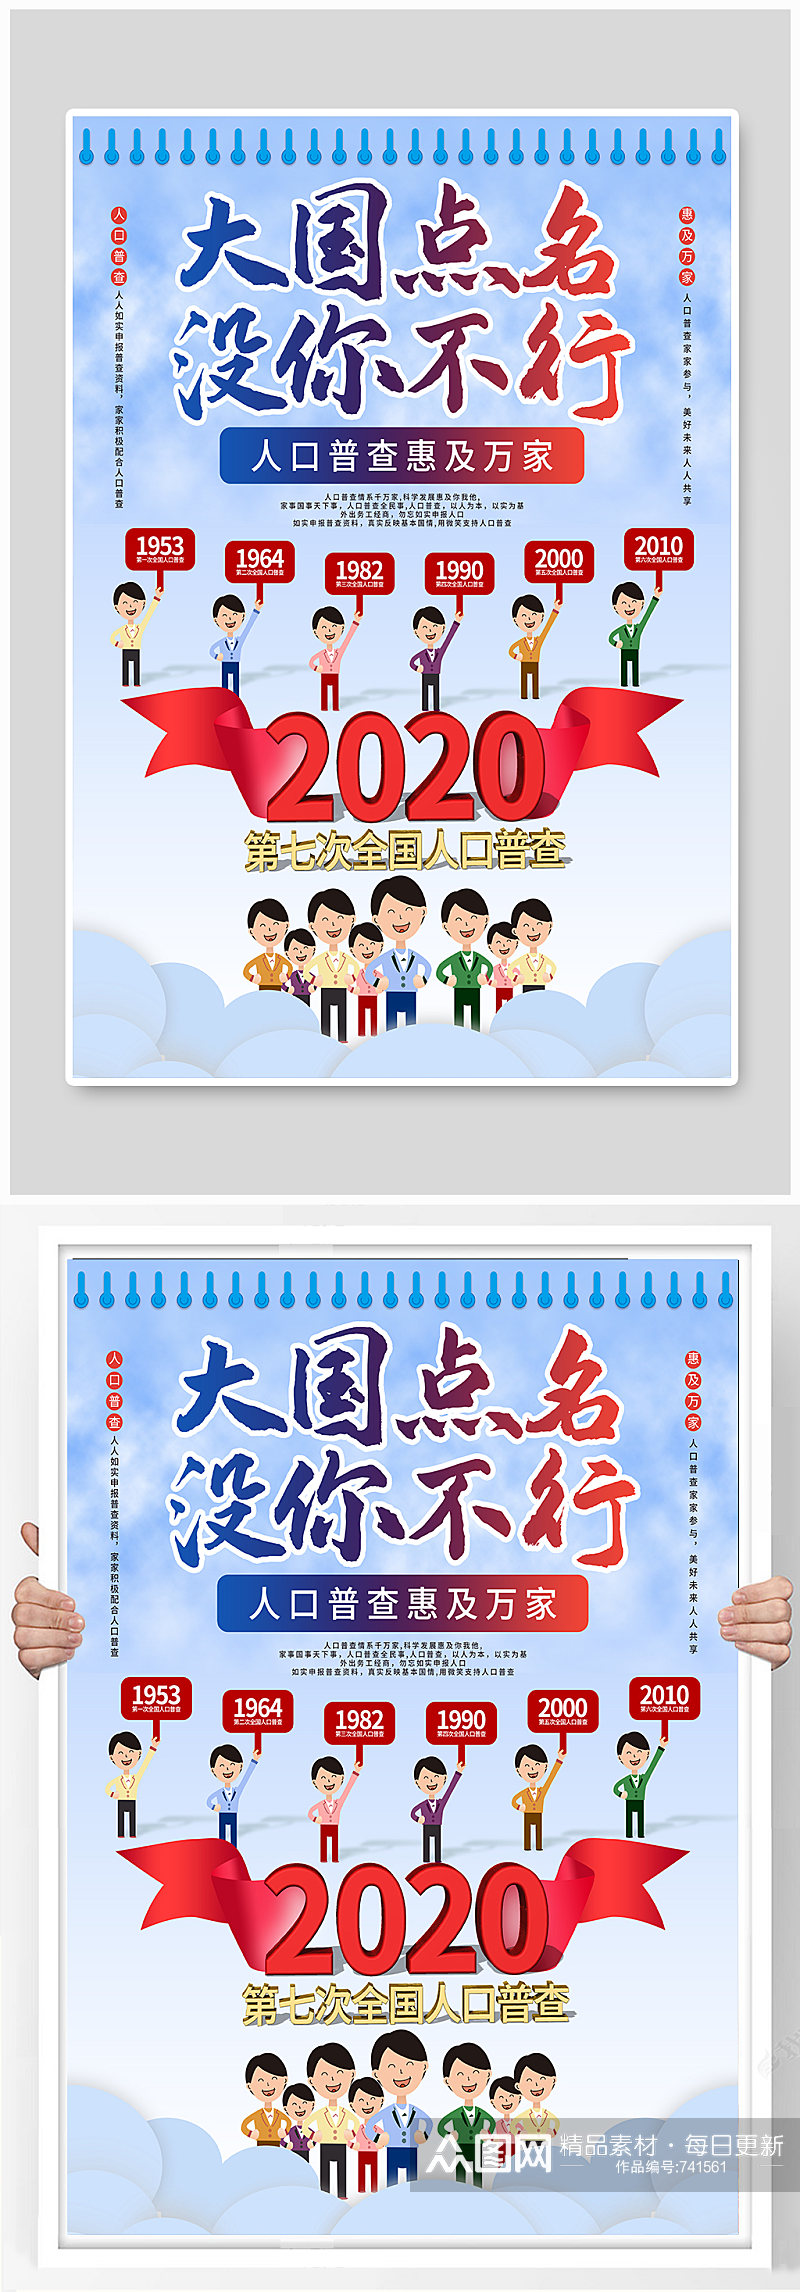 中国第七次人口普查口号标语通知宣传海报素材